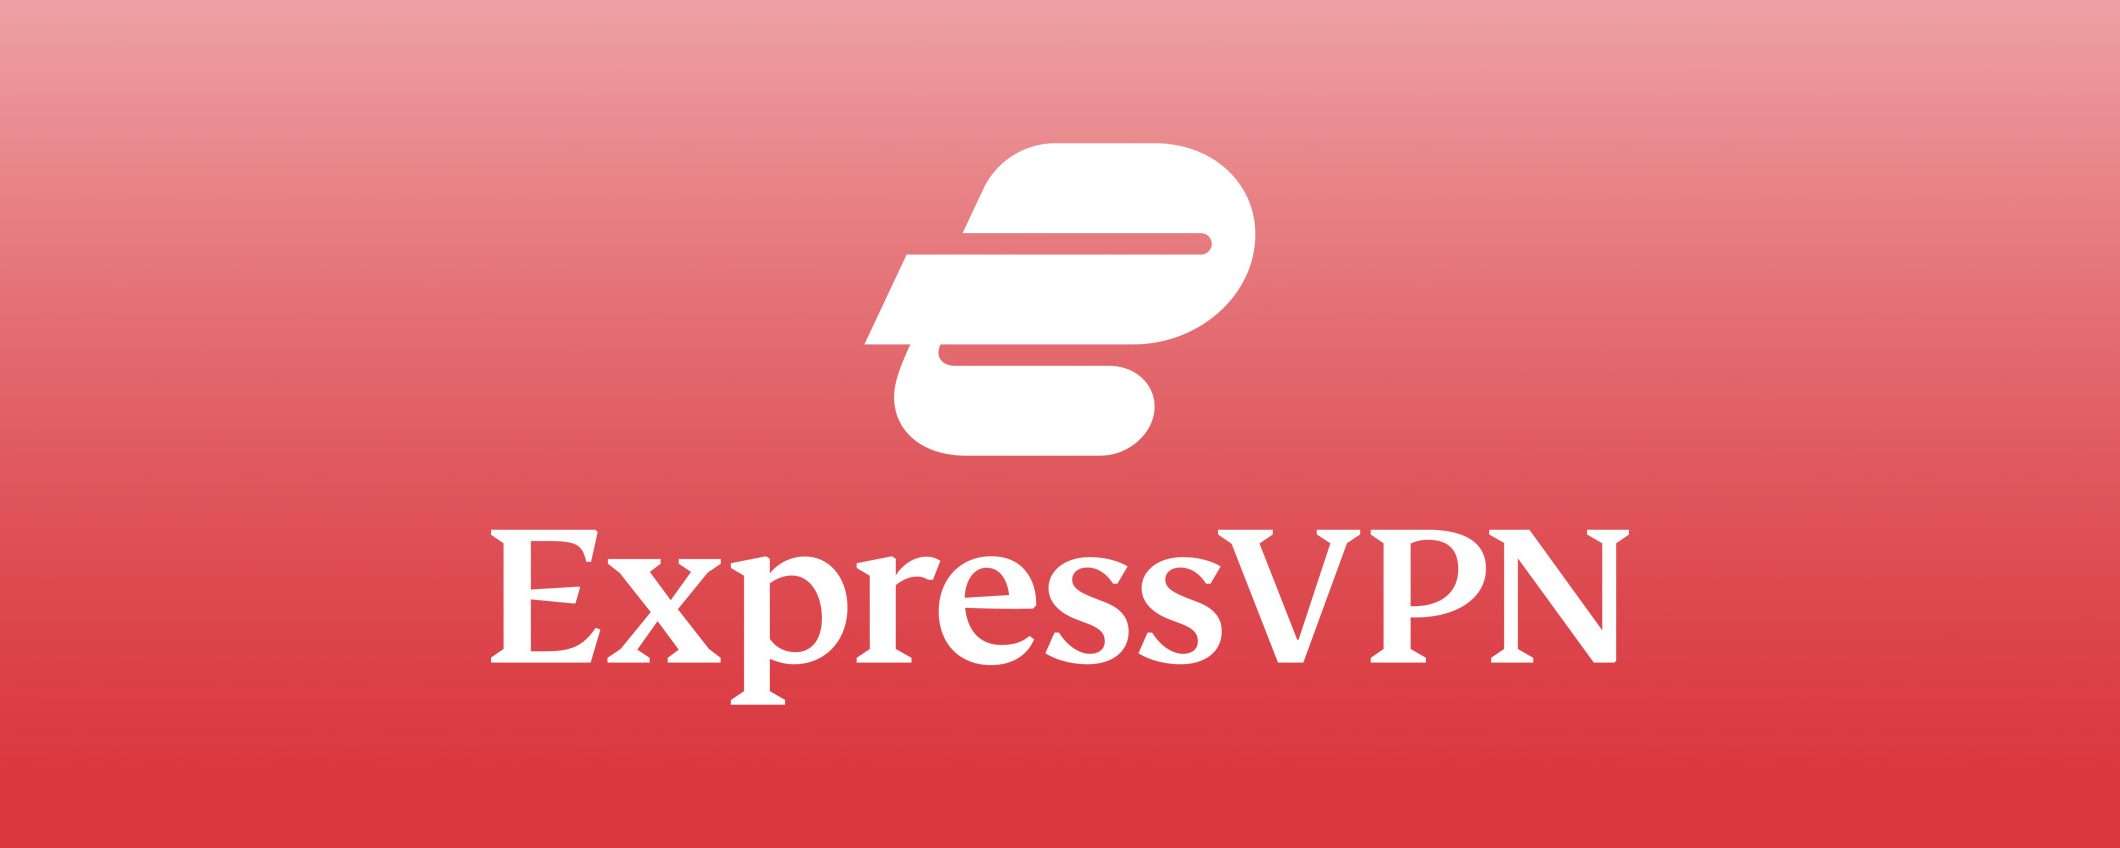 ExpressVPN migliora la sicurezza su Android